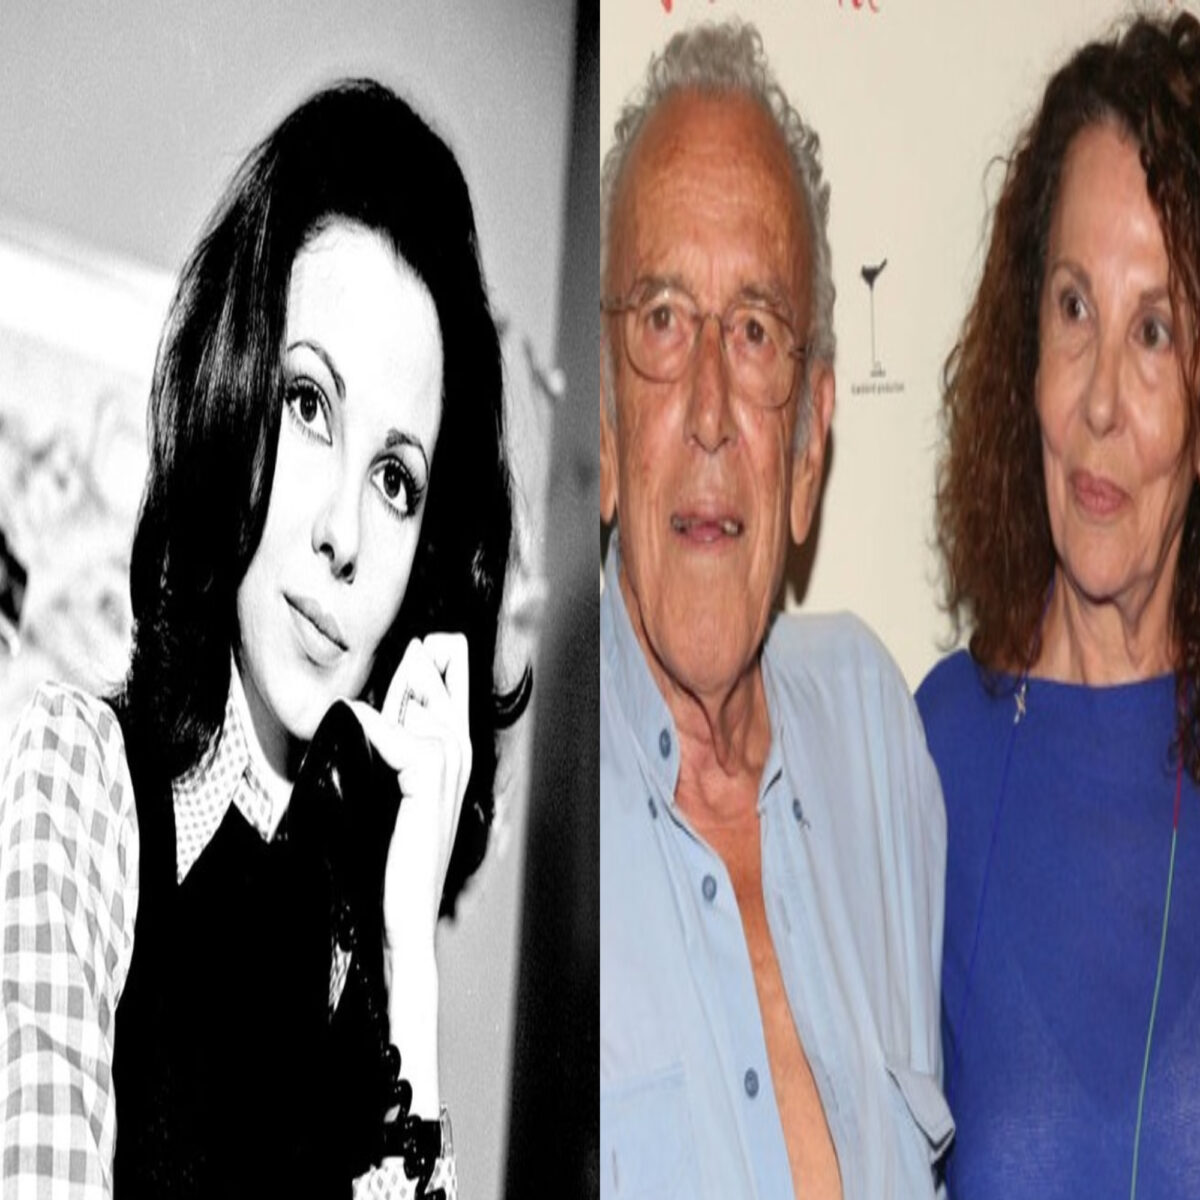 Μπέτυ Λιβανού: Η πανέμορφη κόρη της, Μαργαρίτα Πανουσοπούλου, είναι 35 ετών και διαθέτει την ομορφιά και το ταλέντο της μαμάς της